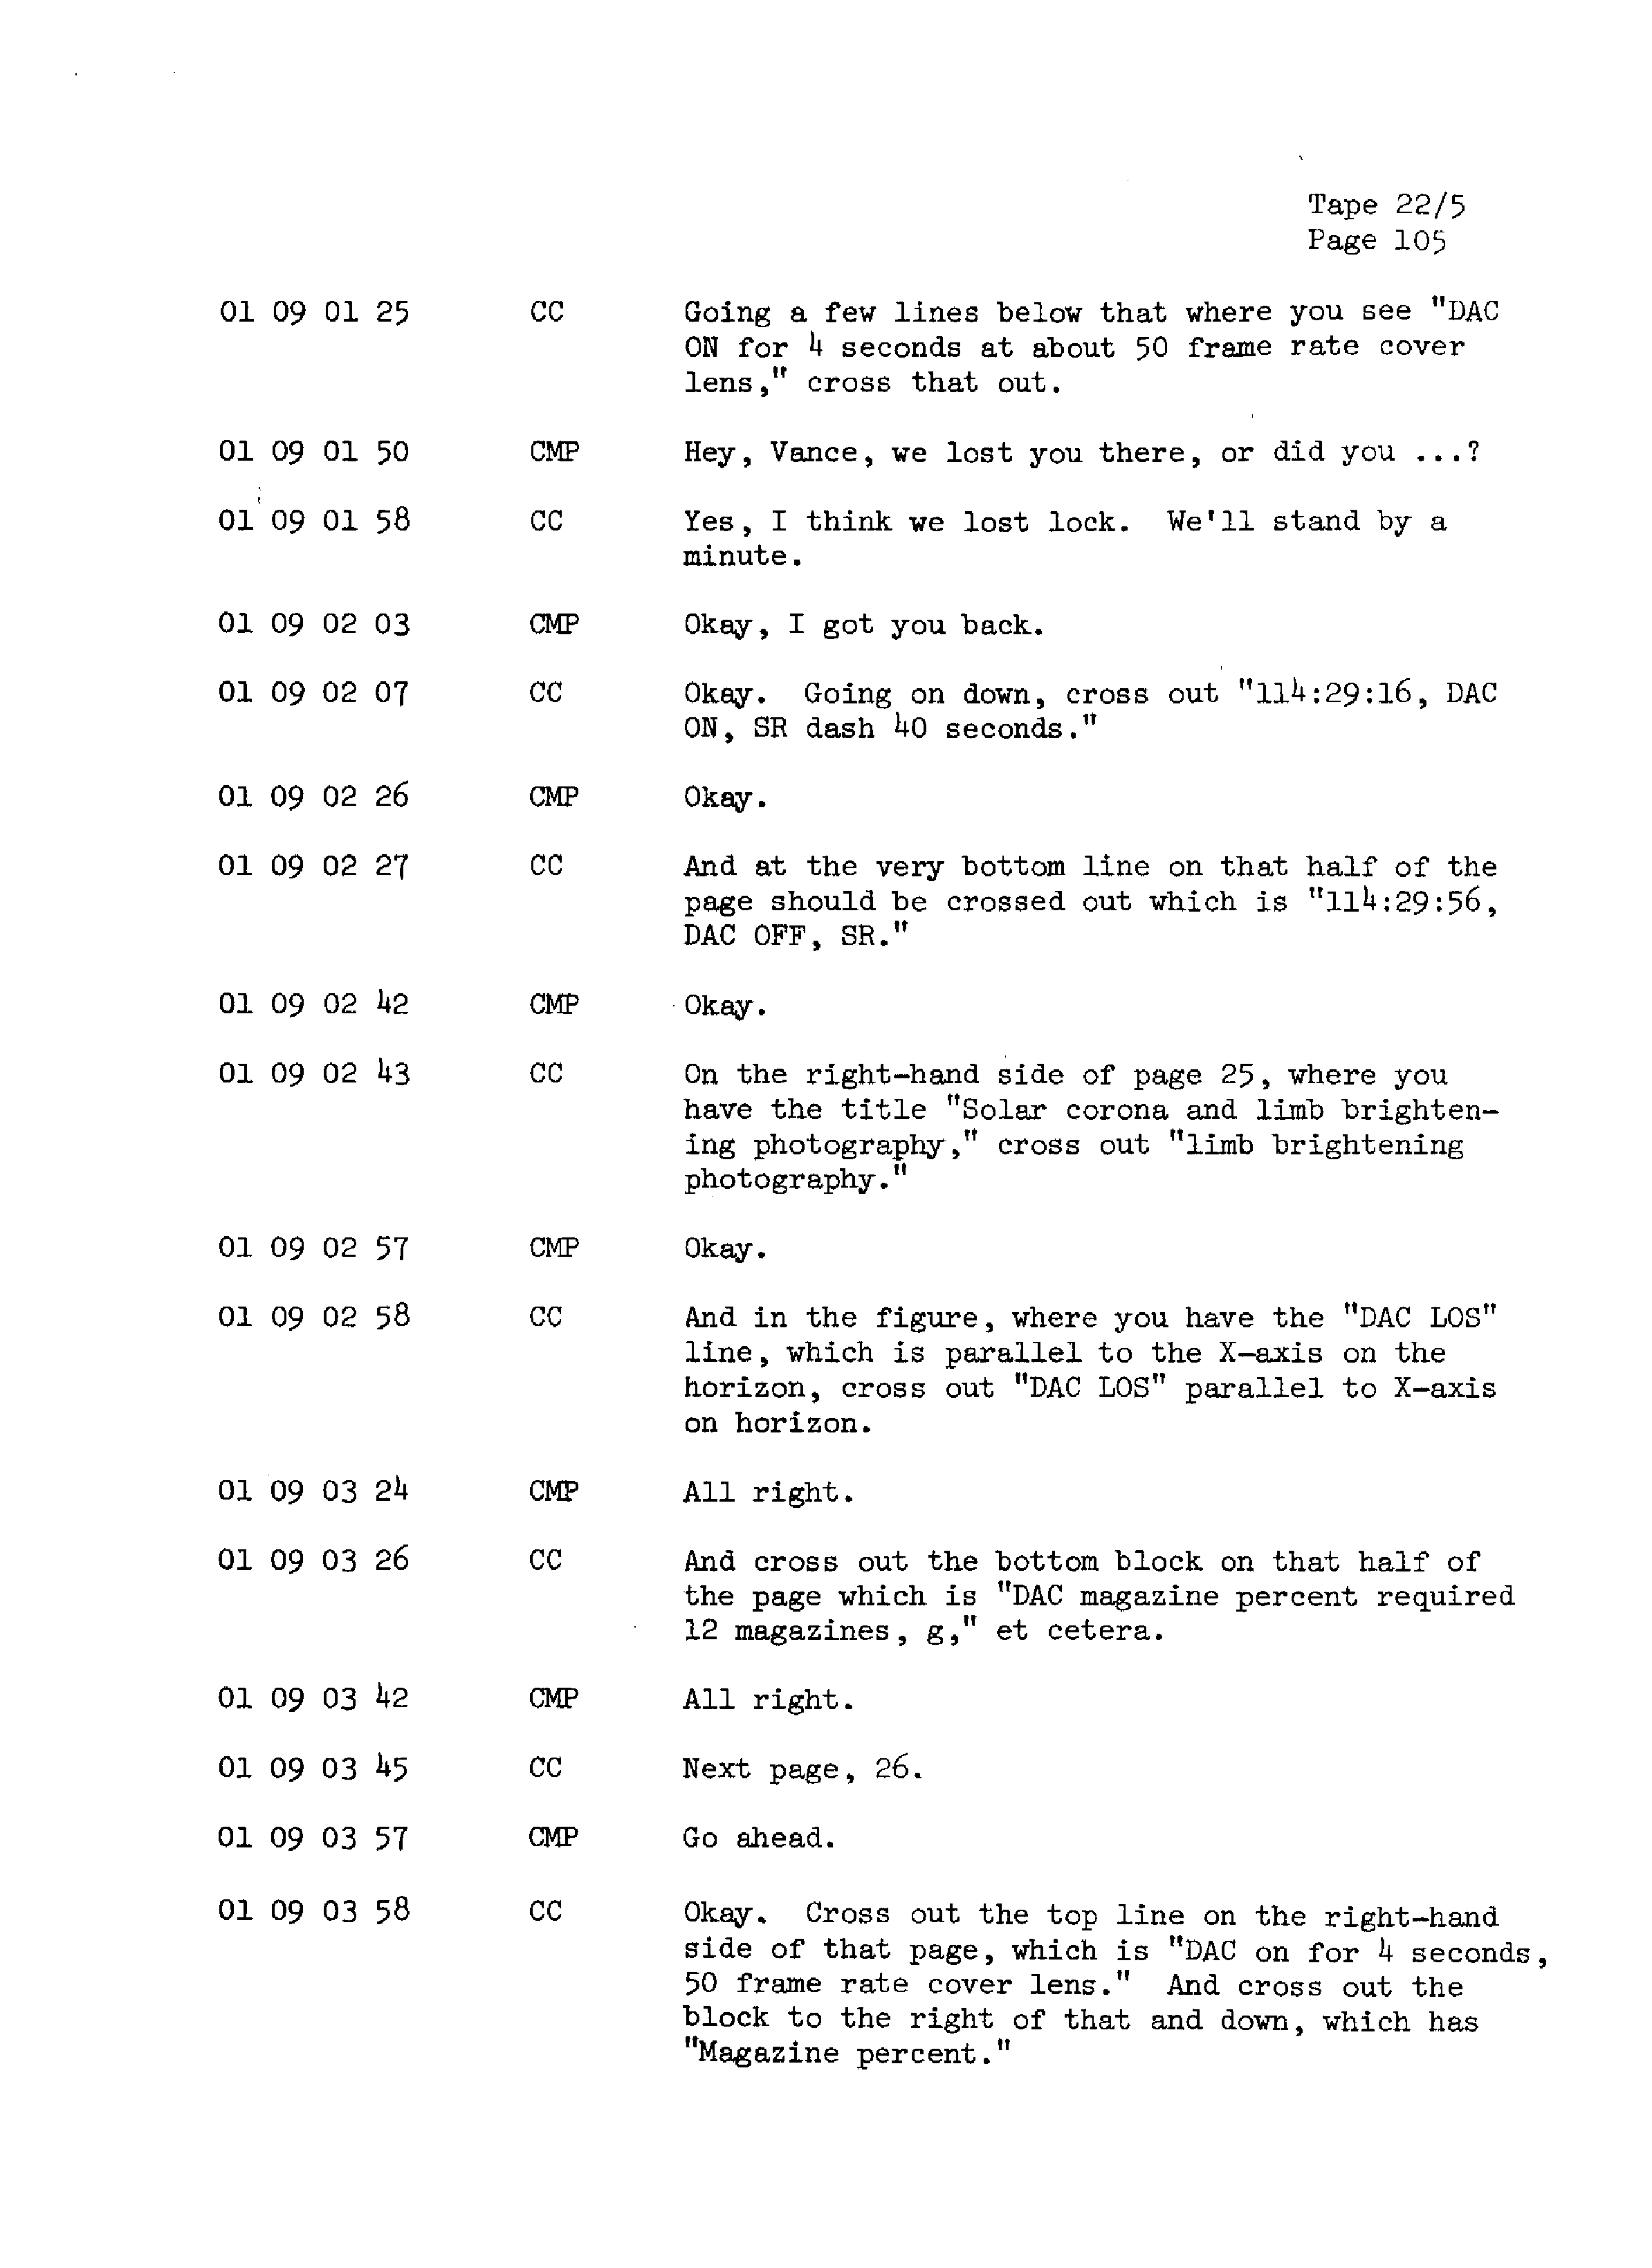 Page 112 of Apollo 13’s original transcript